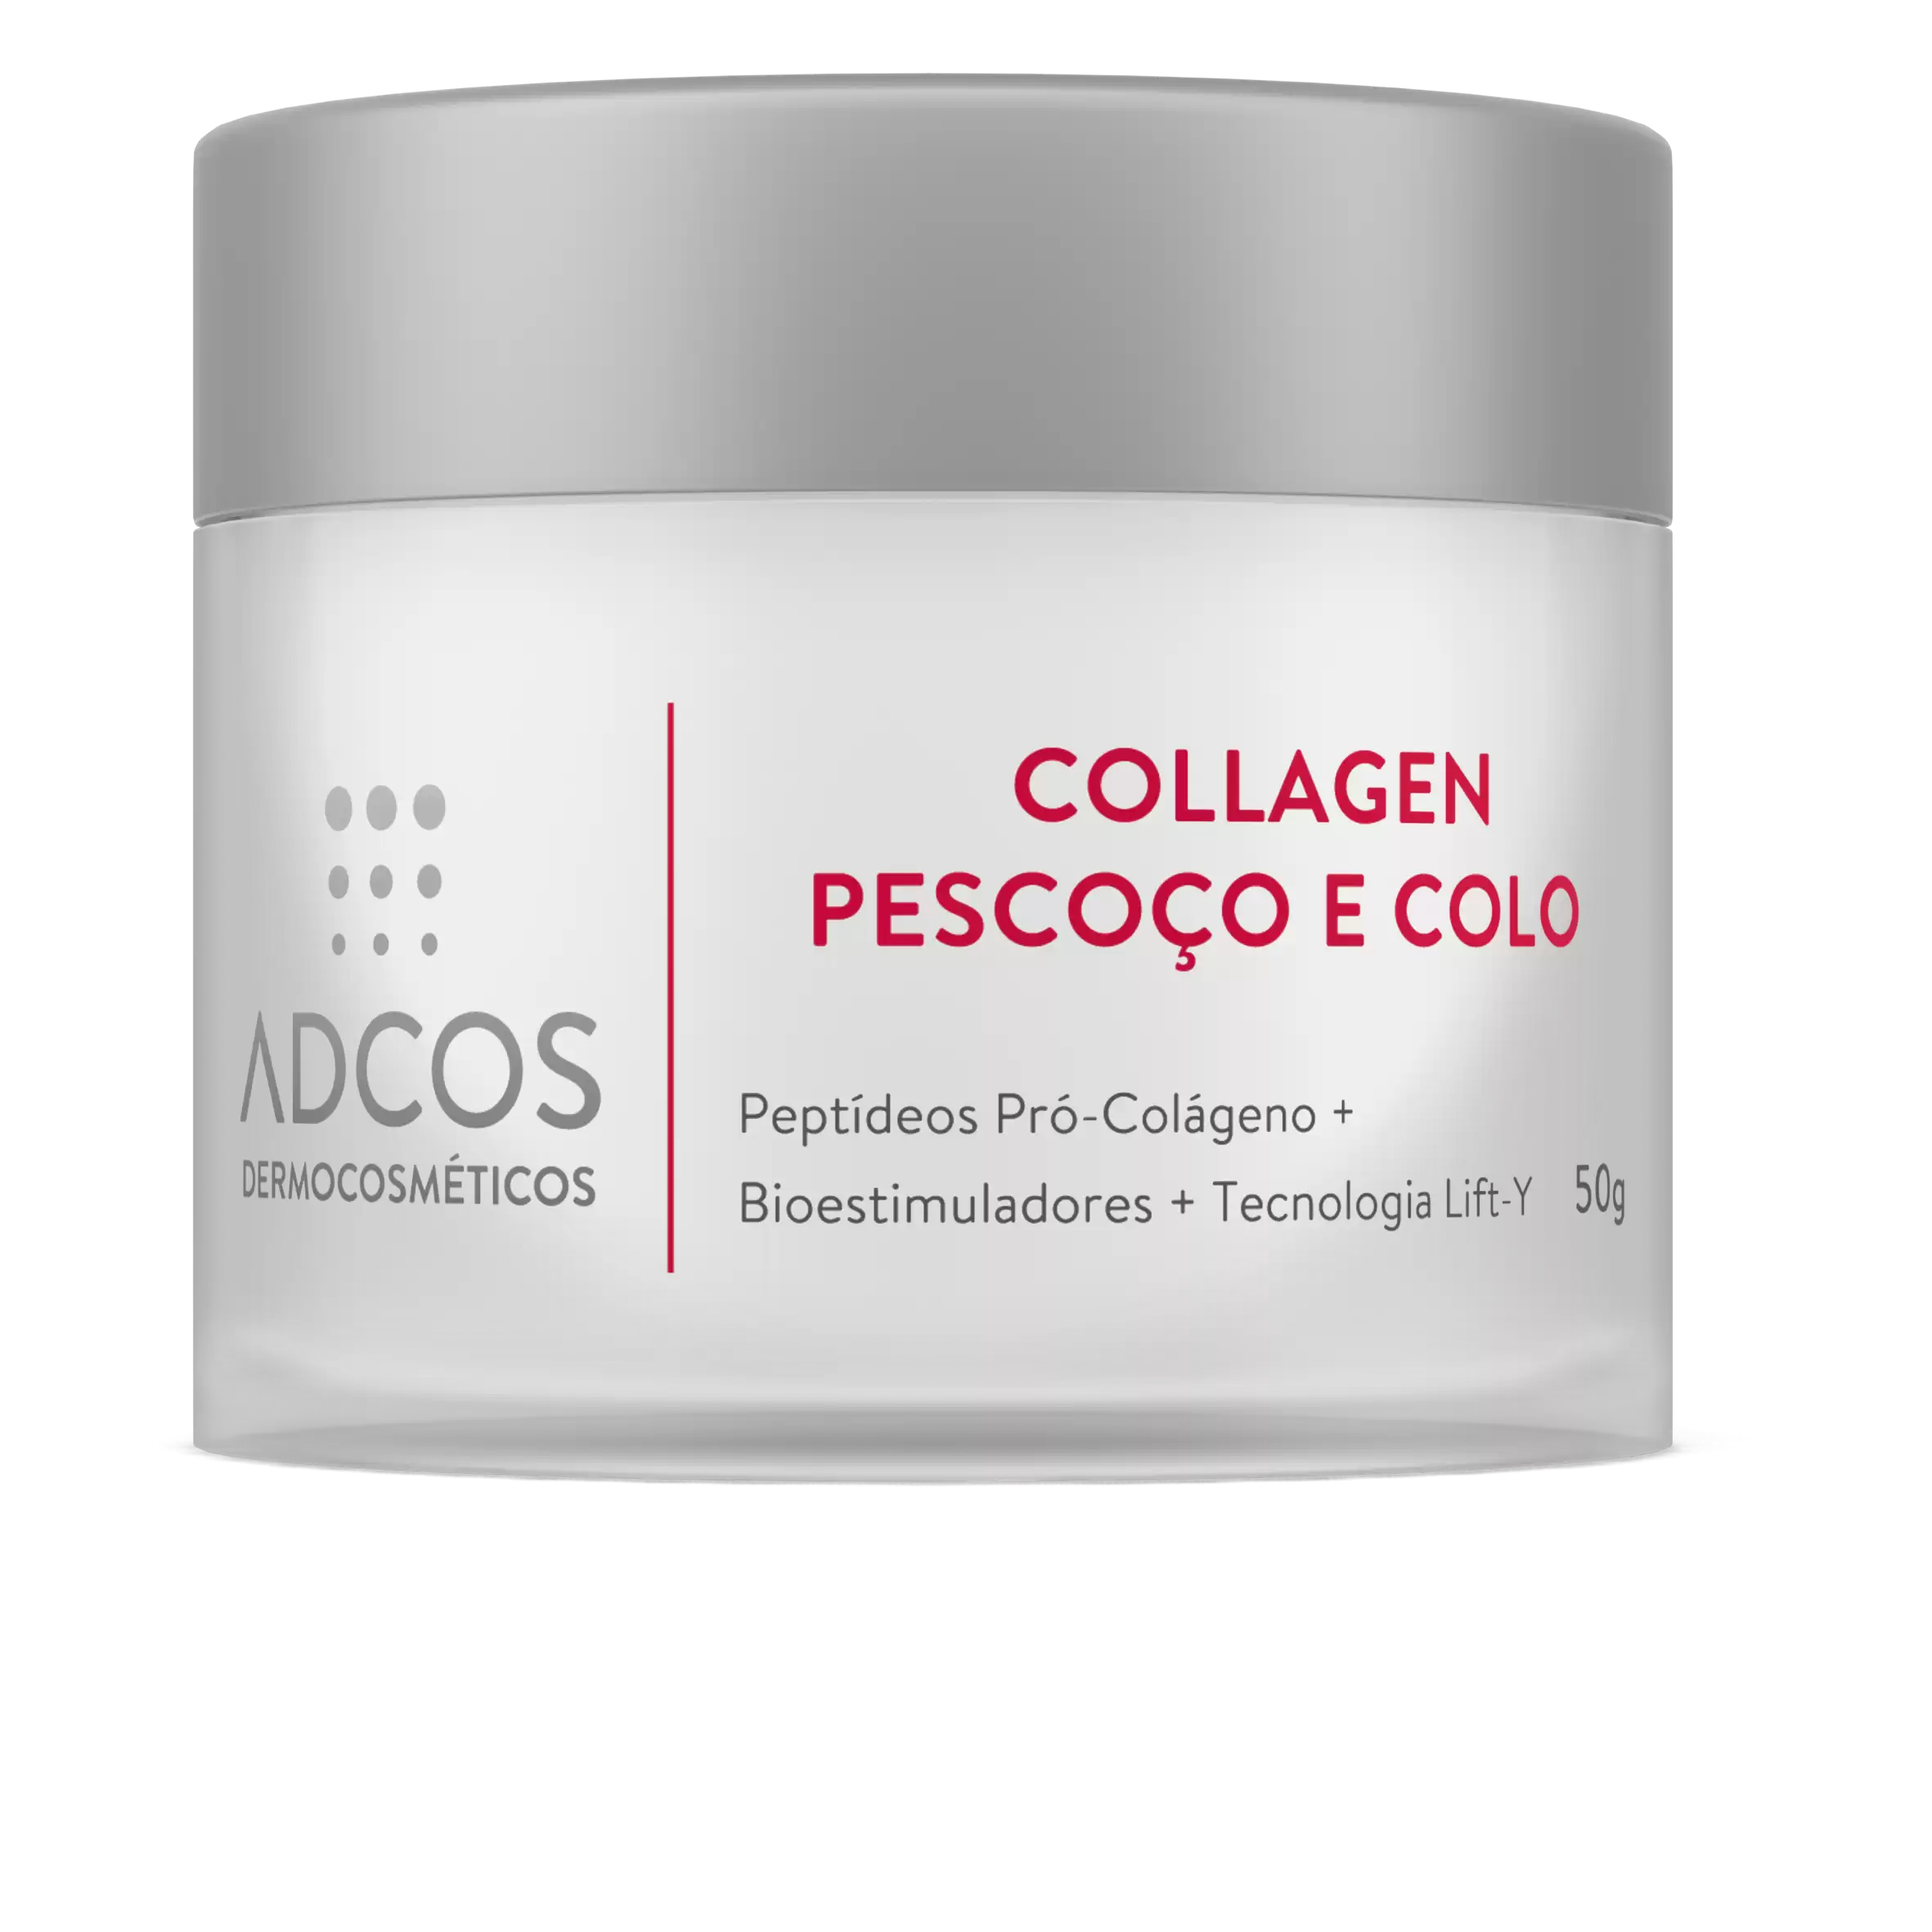 ADCOS lança o Collagen Pescoço e Colo, primeiro integrante da nova linha Collagen 